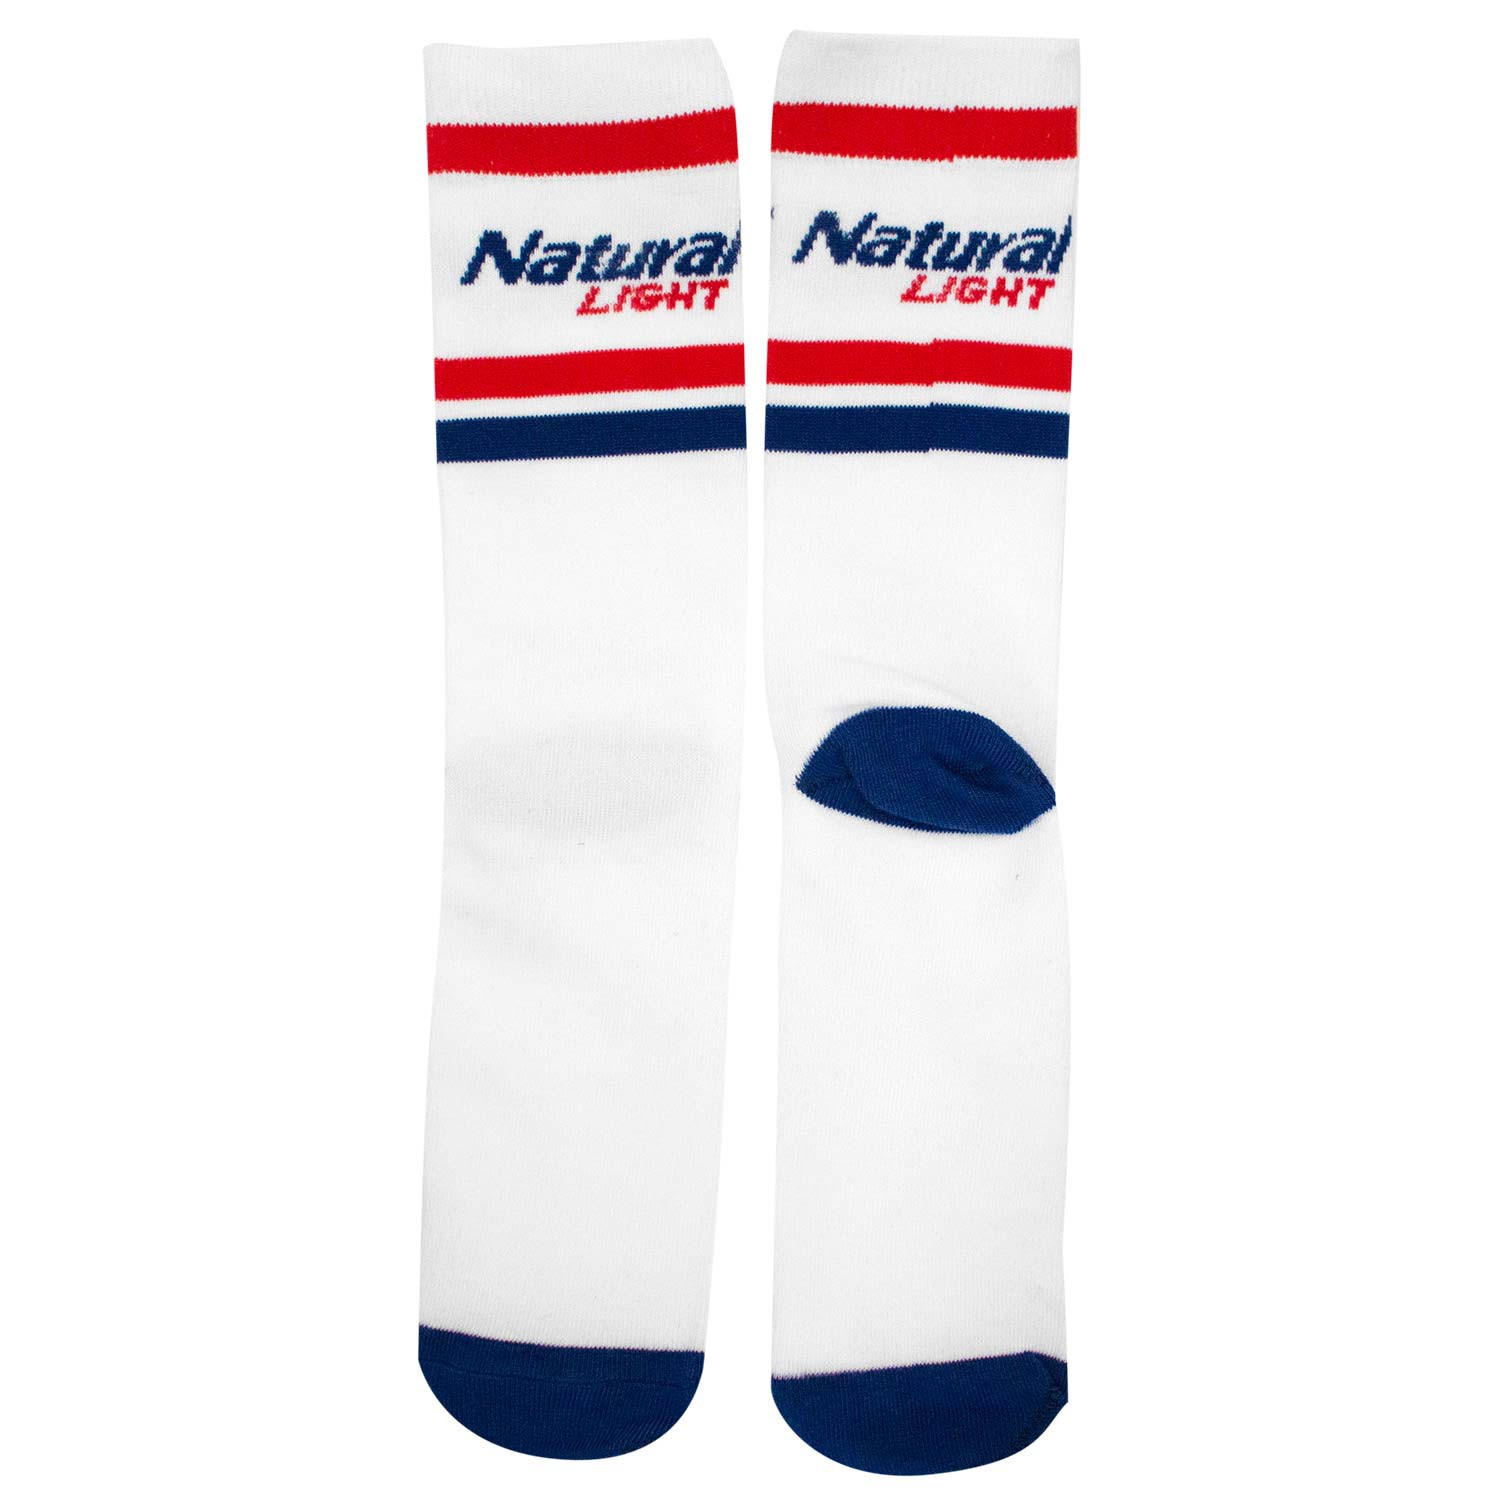 Natural Light White Socks